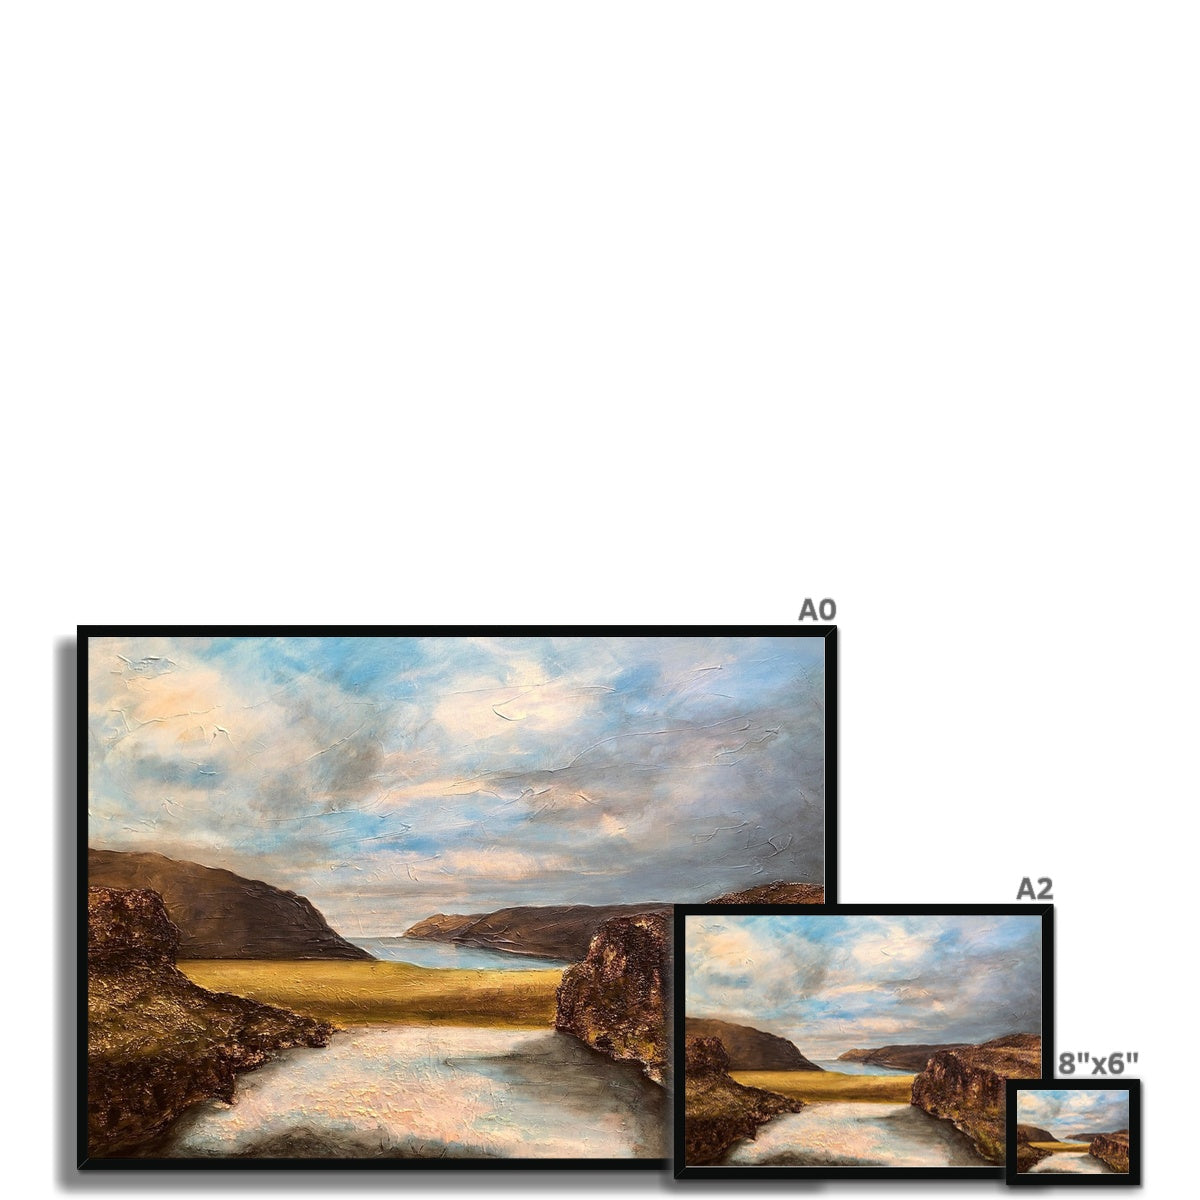 Westfjords Iceland Painting | Framed Prints From Scotland-Framed Prints-World Art Gallery-Paintings, Prints, Homeware, Art Gifts From Scotland By Scottish Artist Kevin Hunter